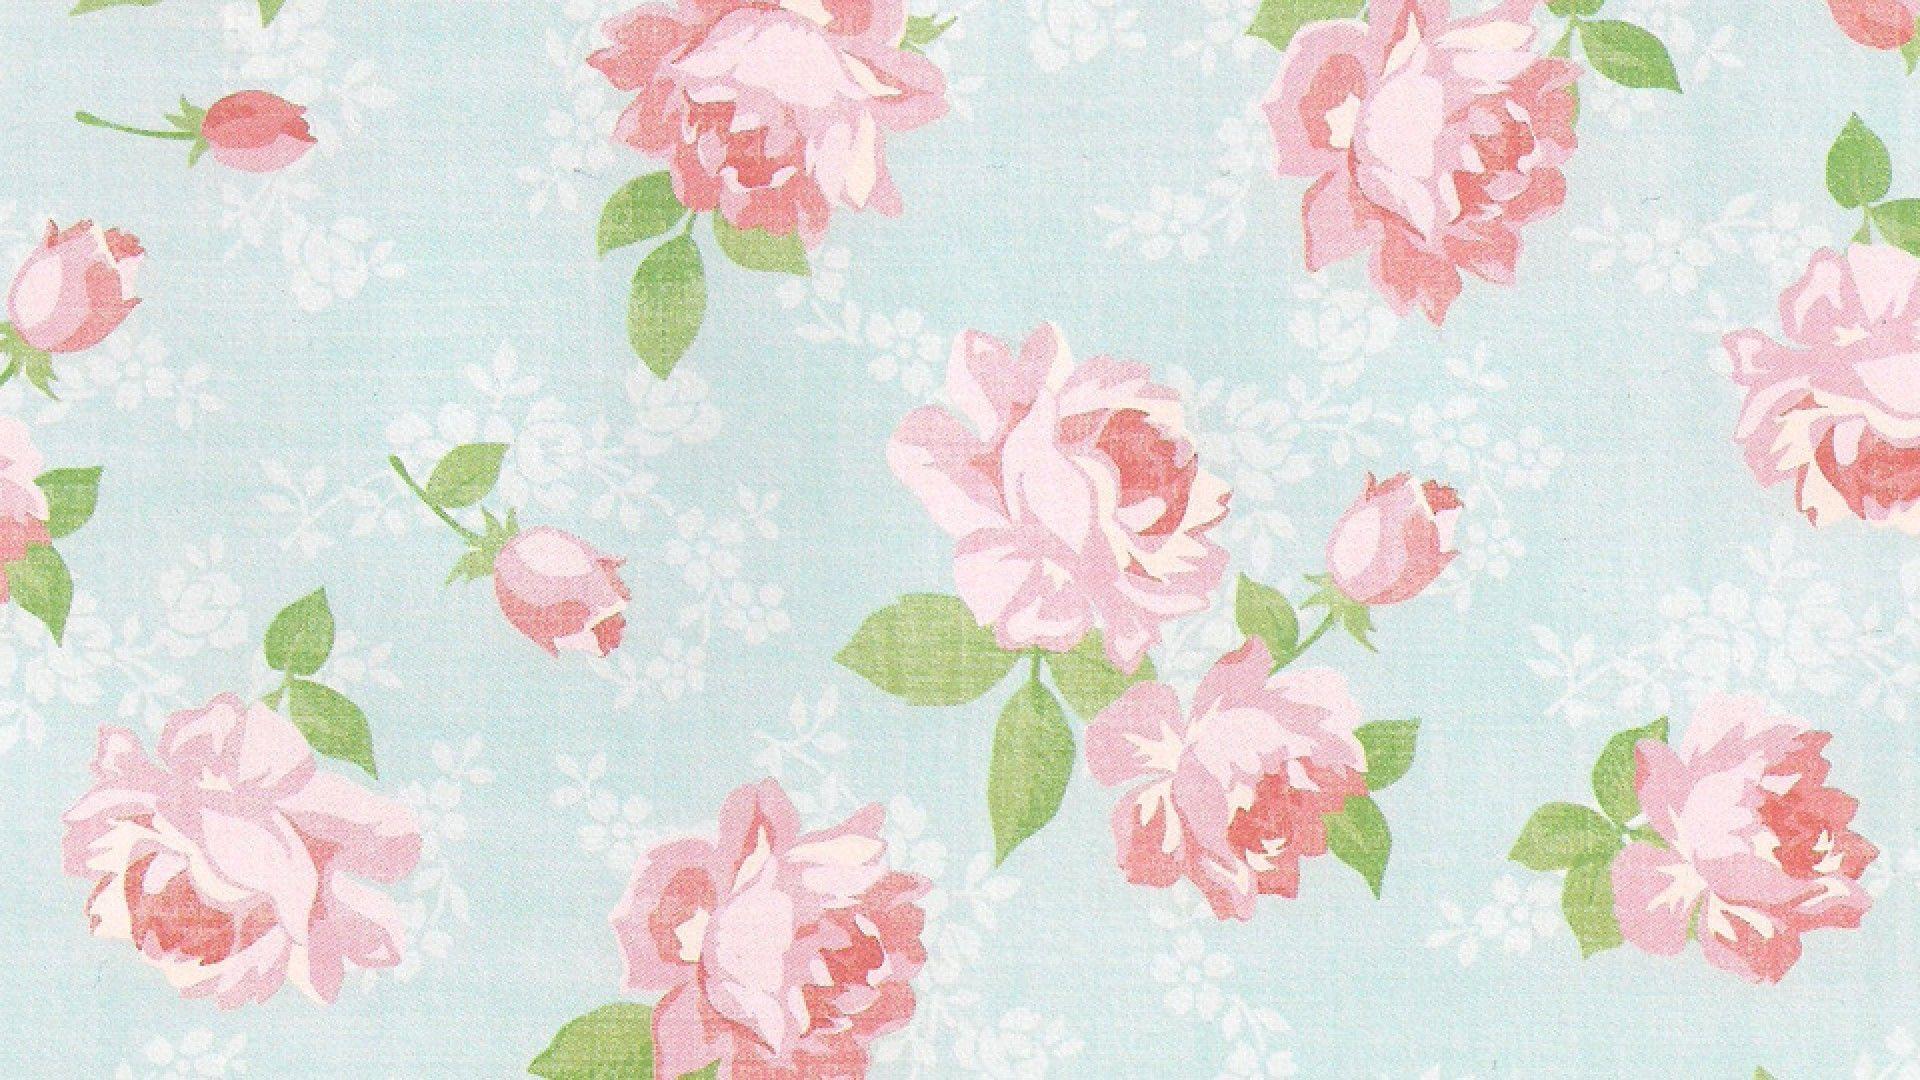 Flower background TumblrDownload free stunning wallpaper